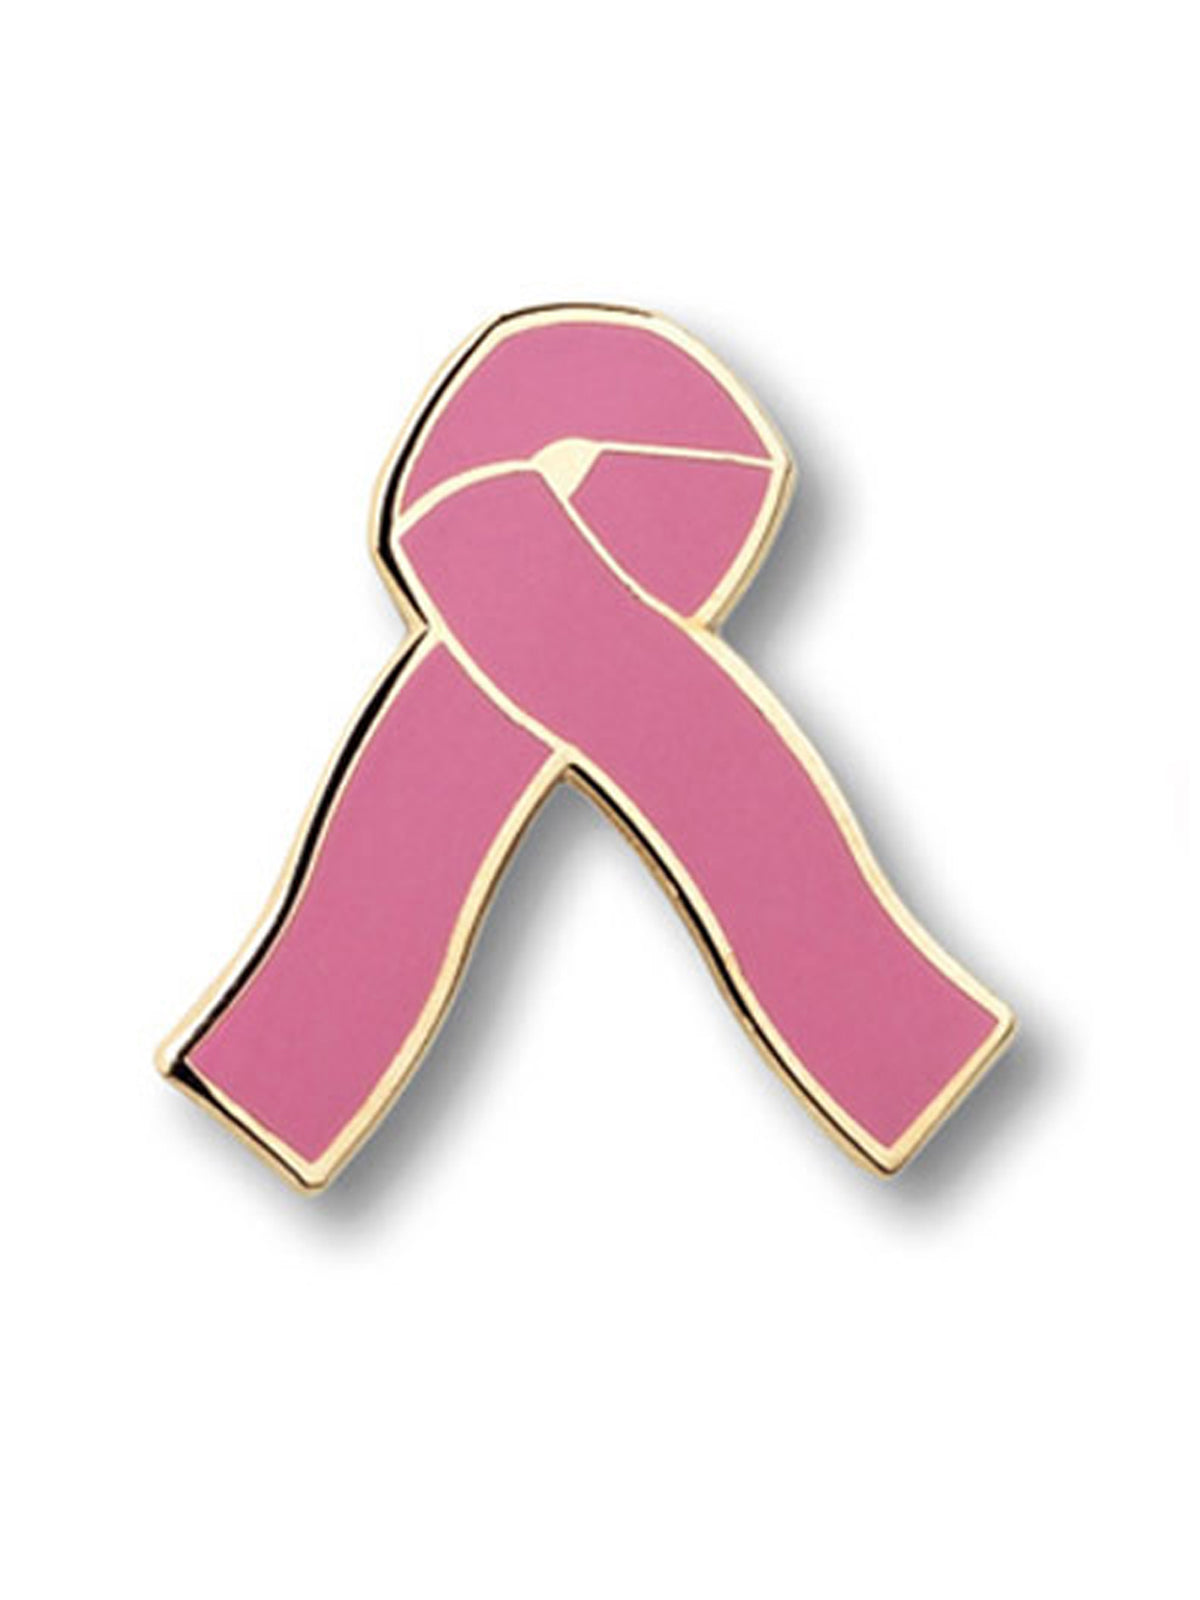 Pink Ribbon Professional Tac - 992 - Standard